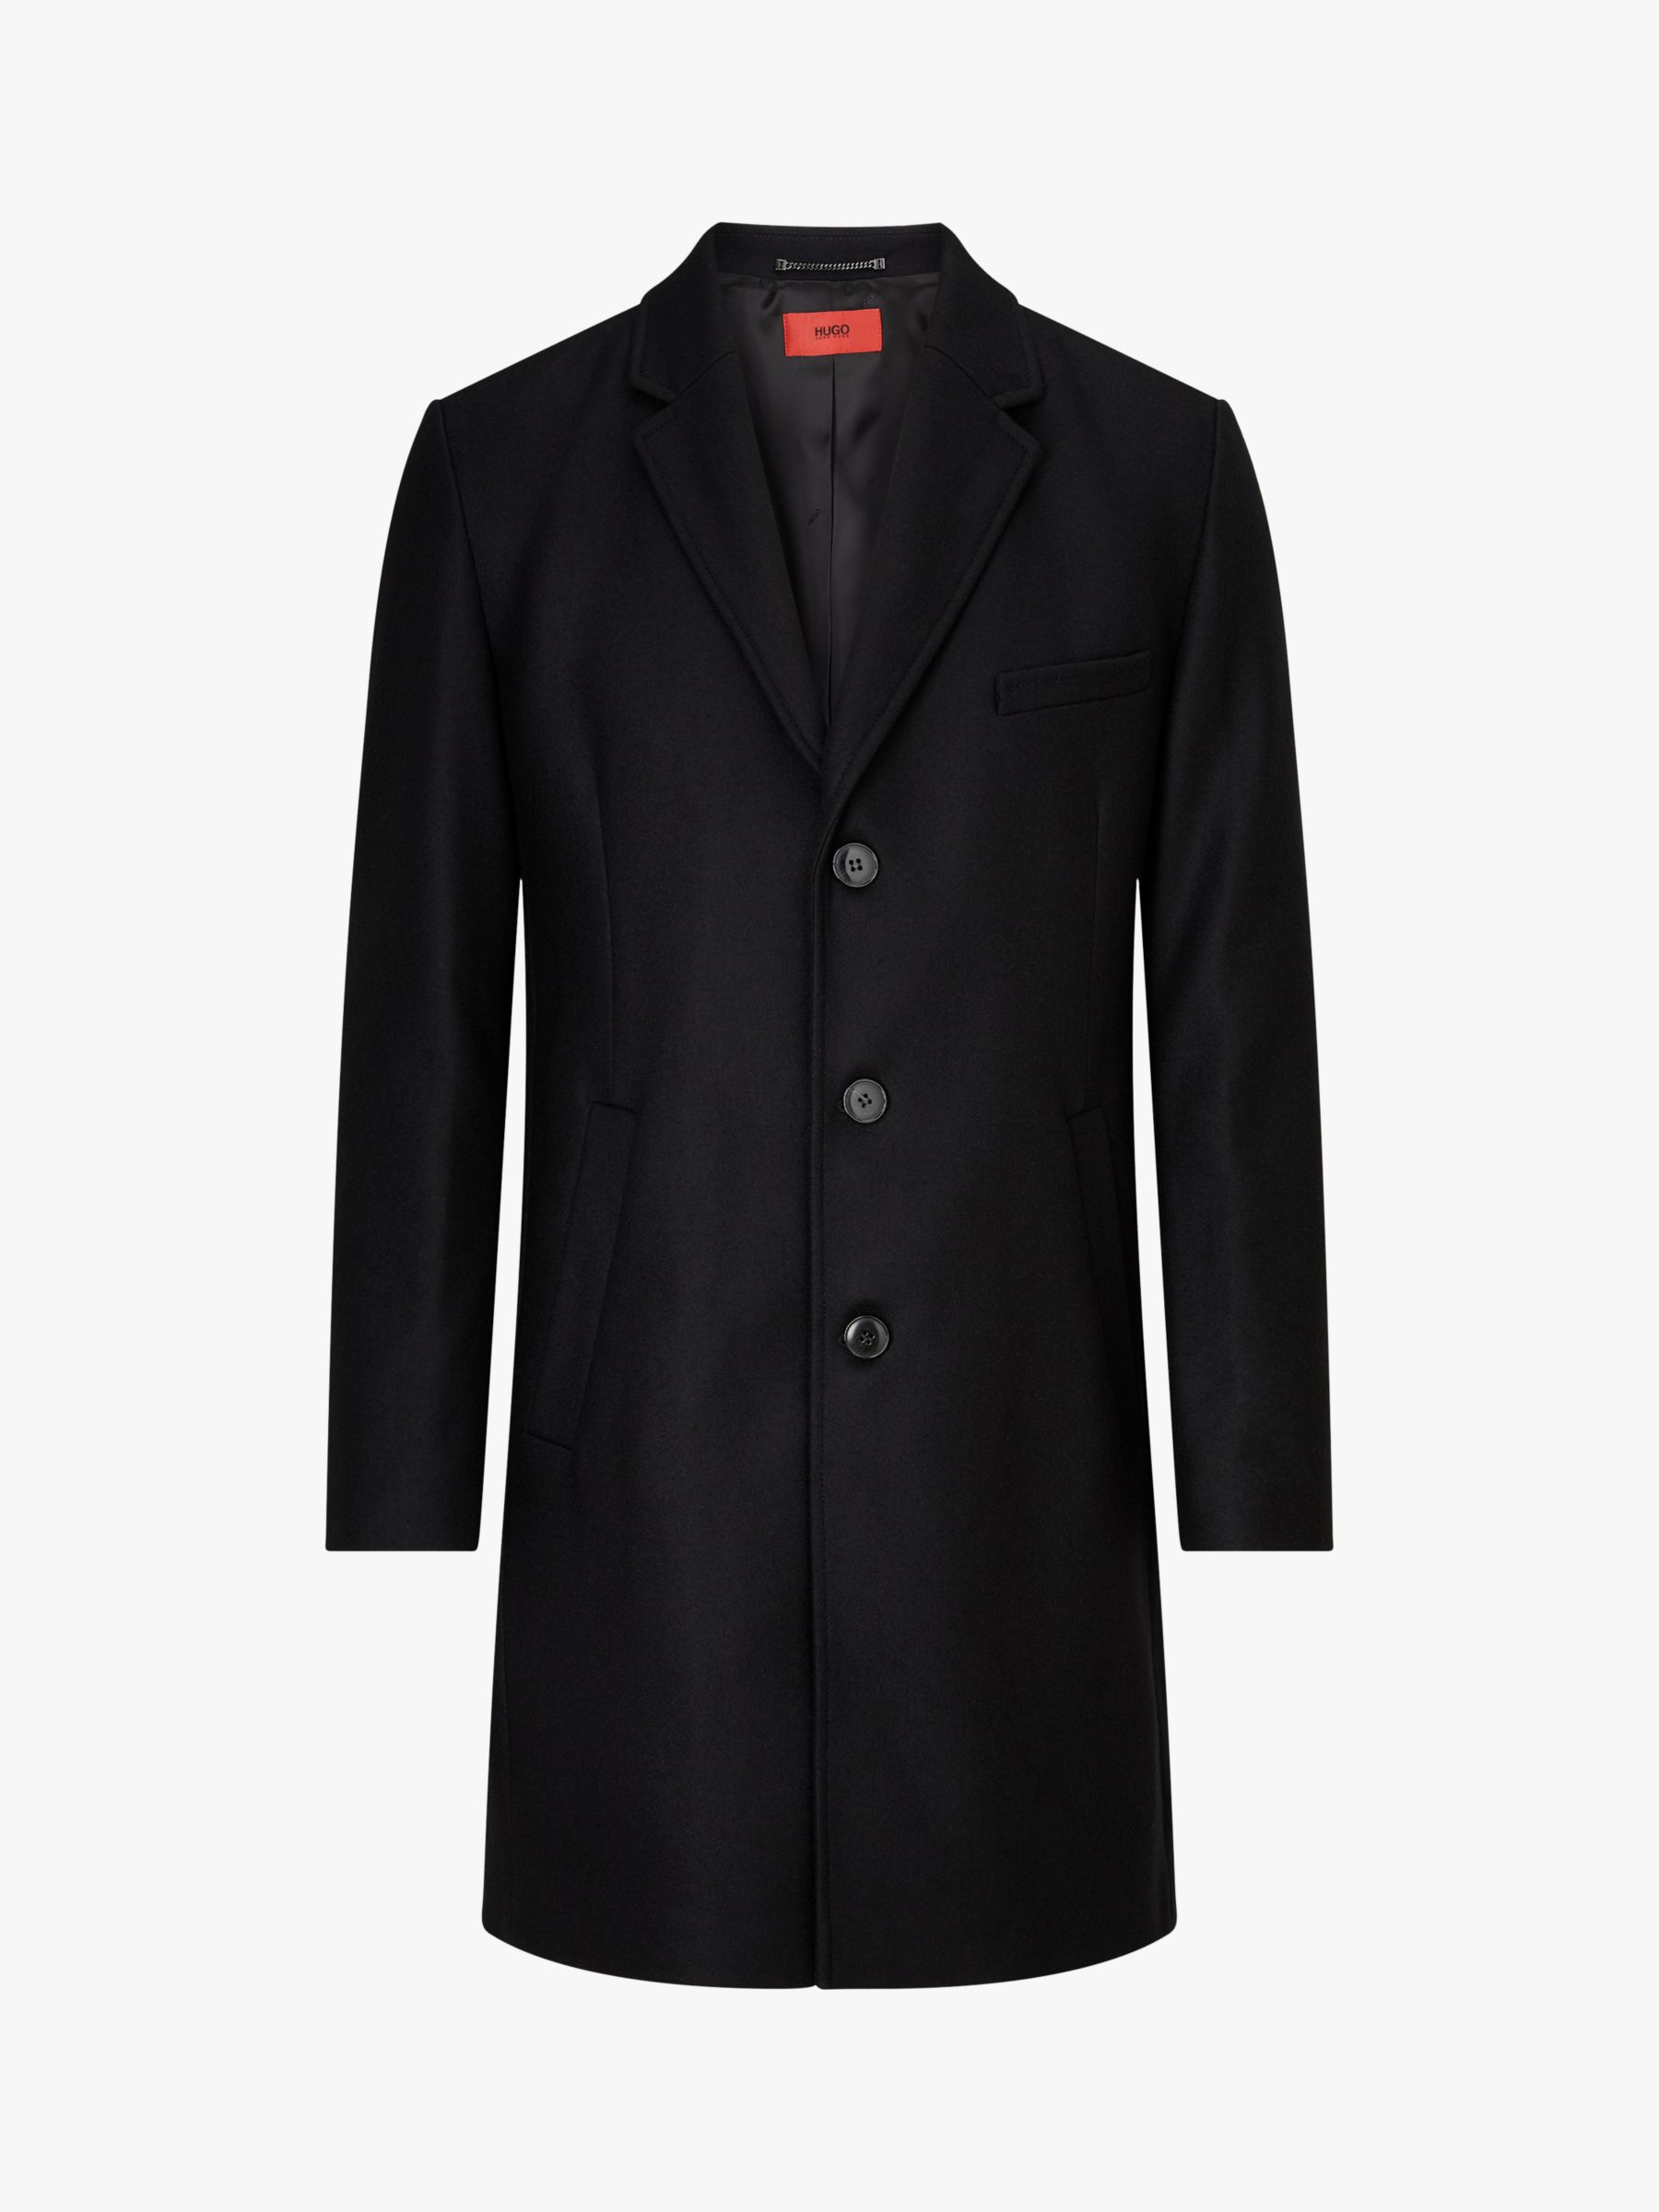 hugo boss black overcoat